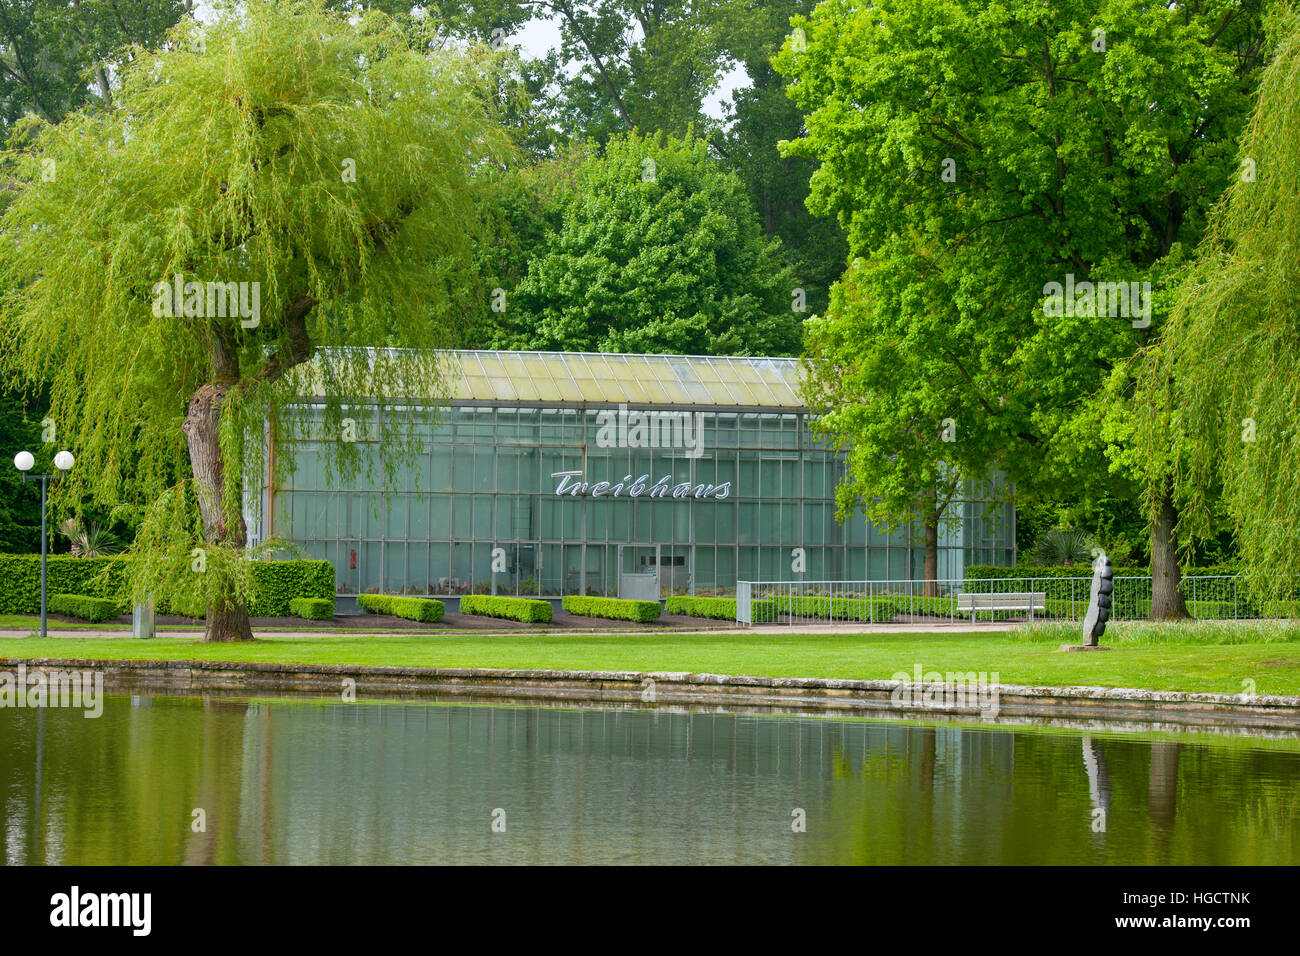 Deutschland, Dortmund, Westfalenpark, Treibhaus am Eingang Buschmühle Stock Photo